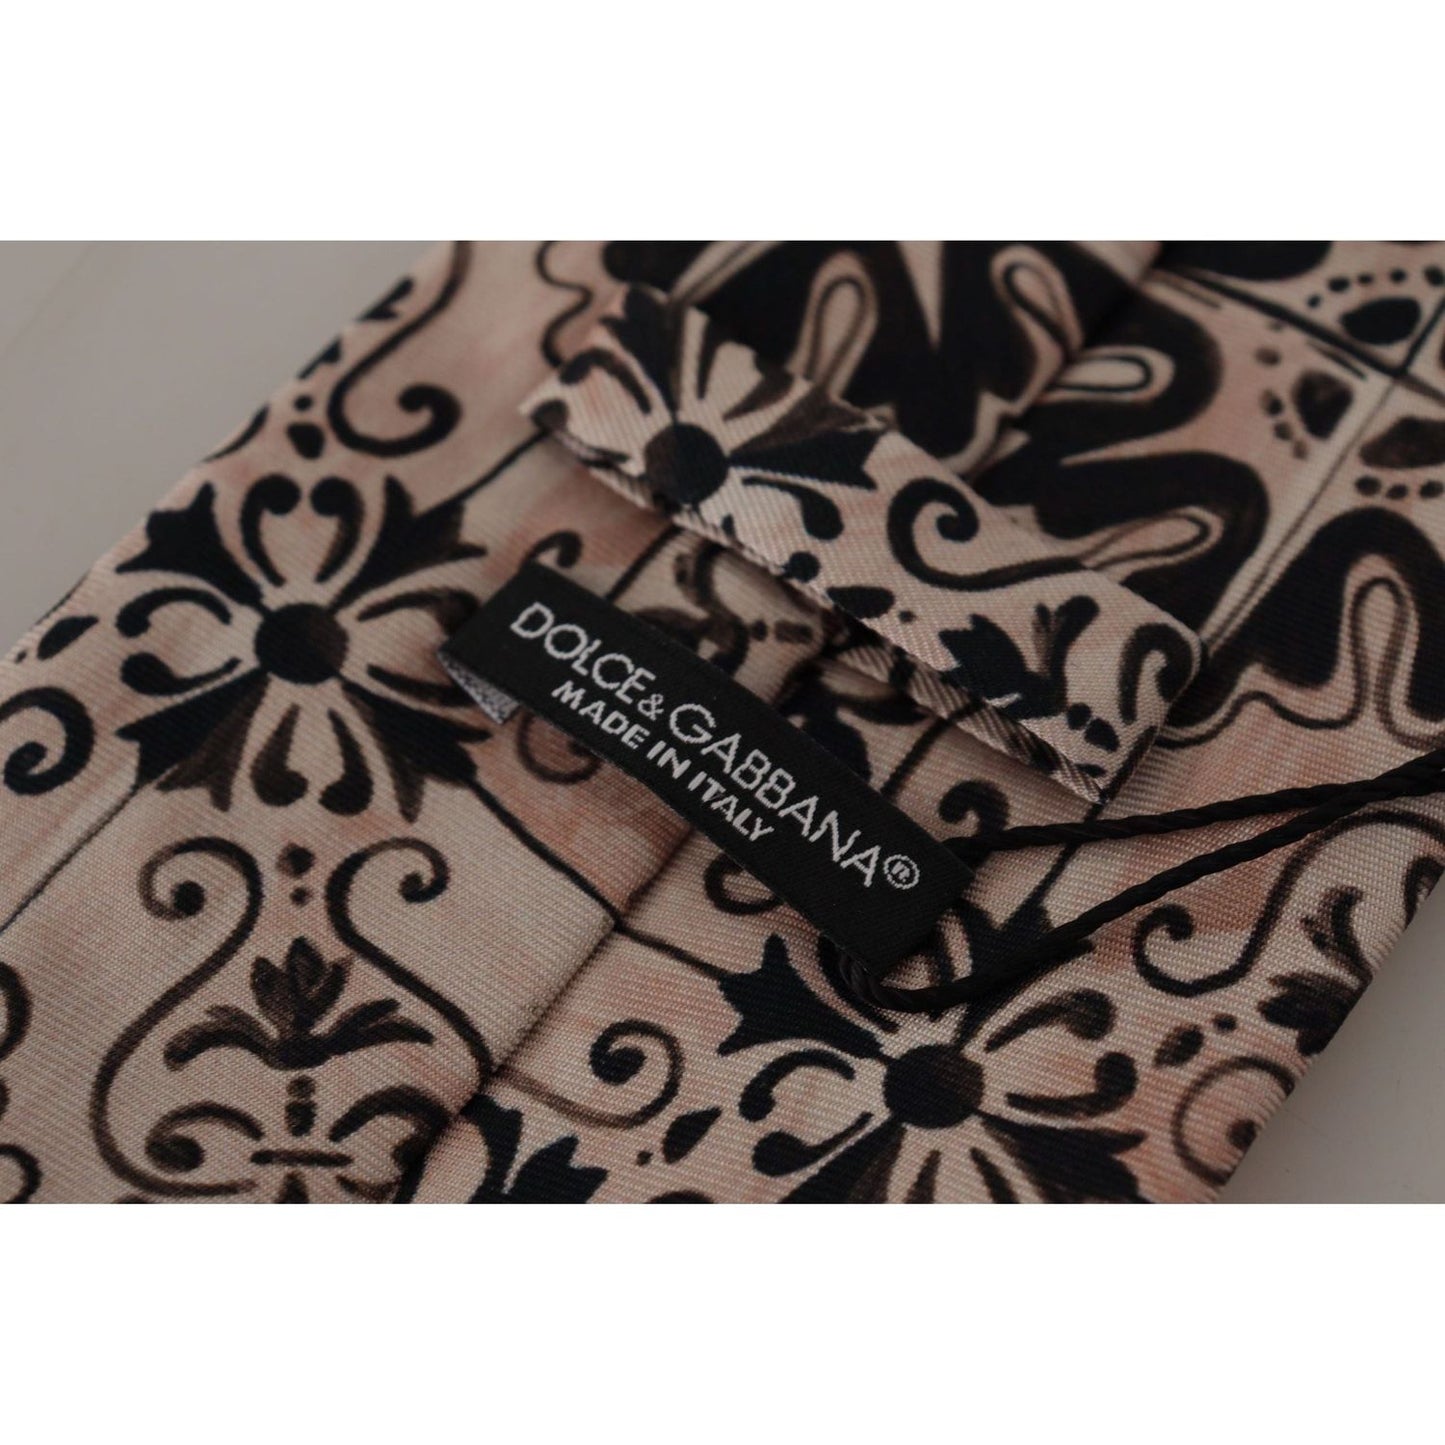 Dolce & Gabbana Stunning Silk Gentleman's Tie in Rich Brown beige-fantasy-pattern-necktie-accessory-black IMG_3991-scaled-48fcffa9-ad6.jpg